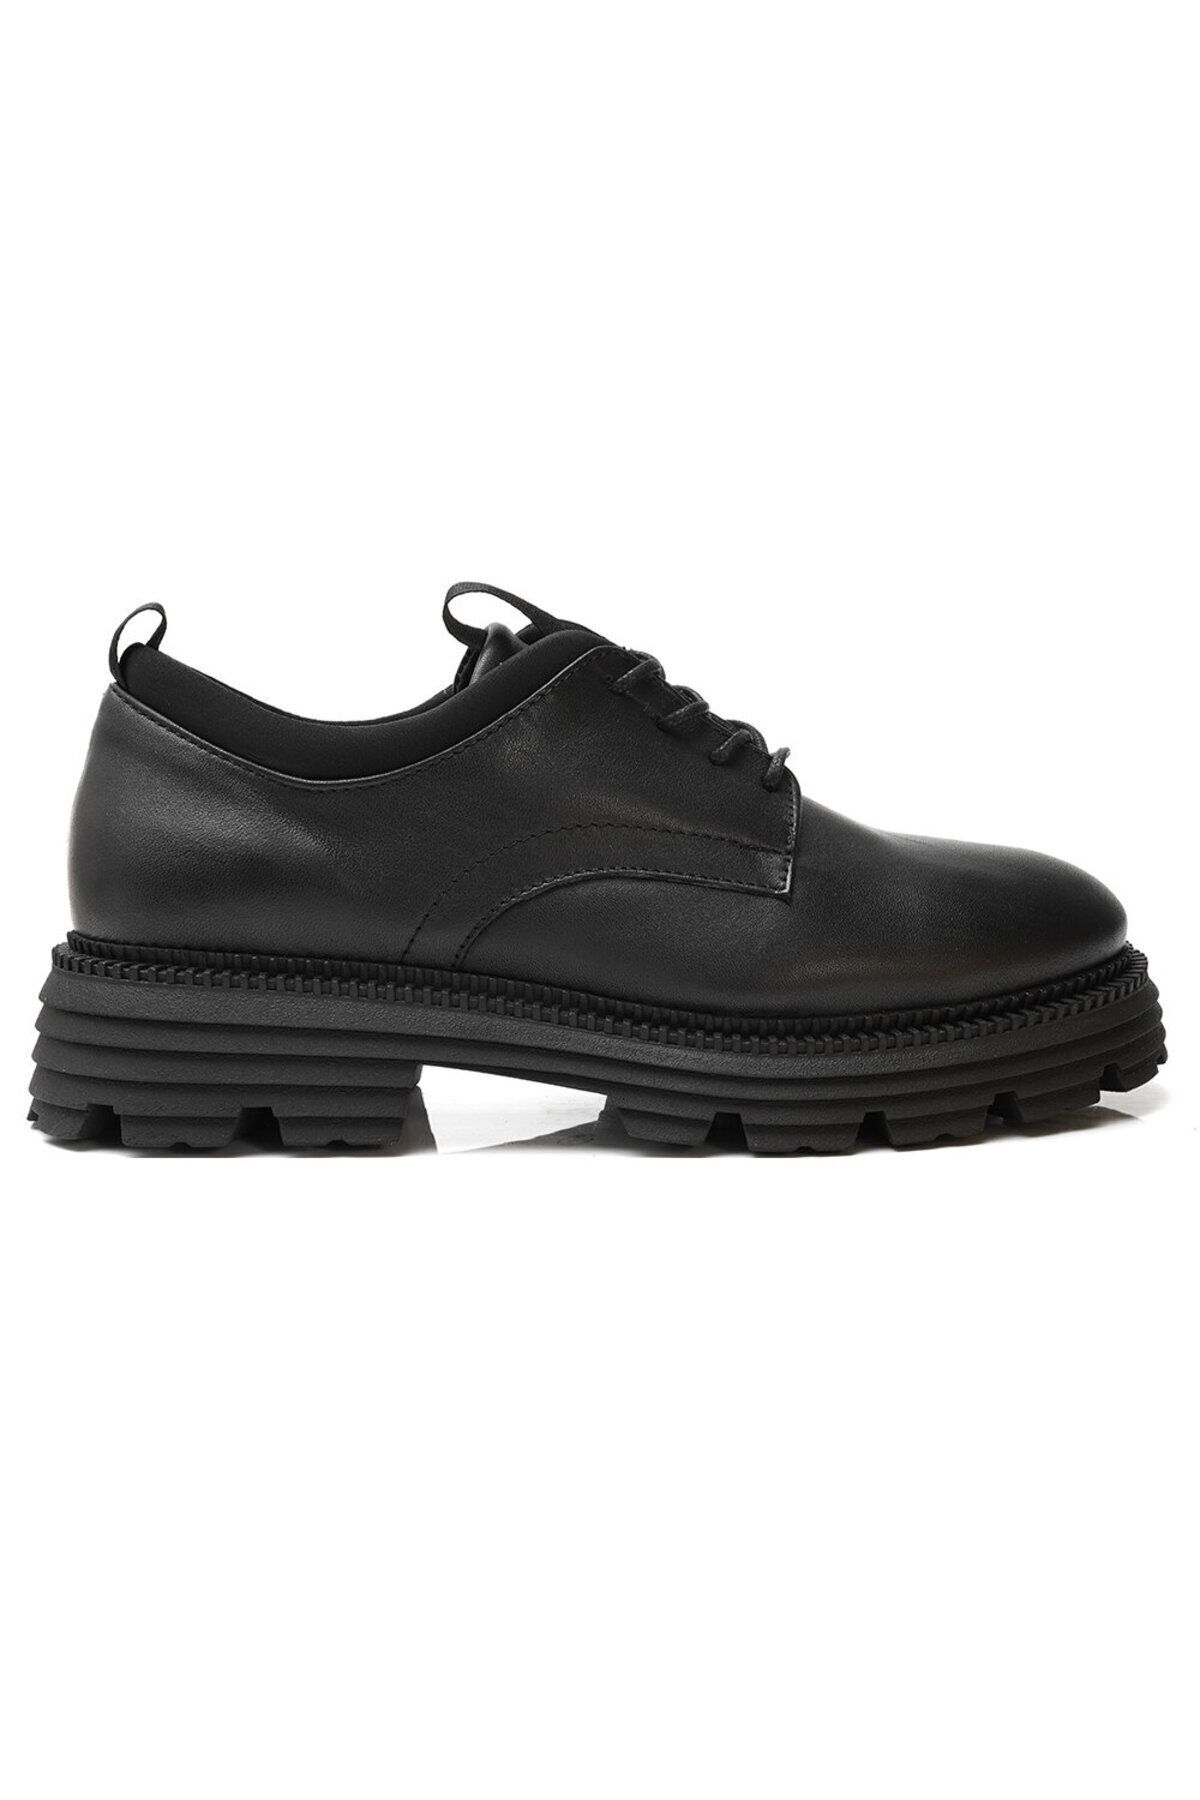 Greyder Kadın Siyah Hakiki Deri Oxford Ayakkabı 3k2ka33140 Fiyatı ...